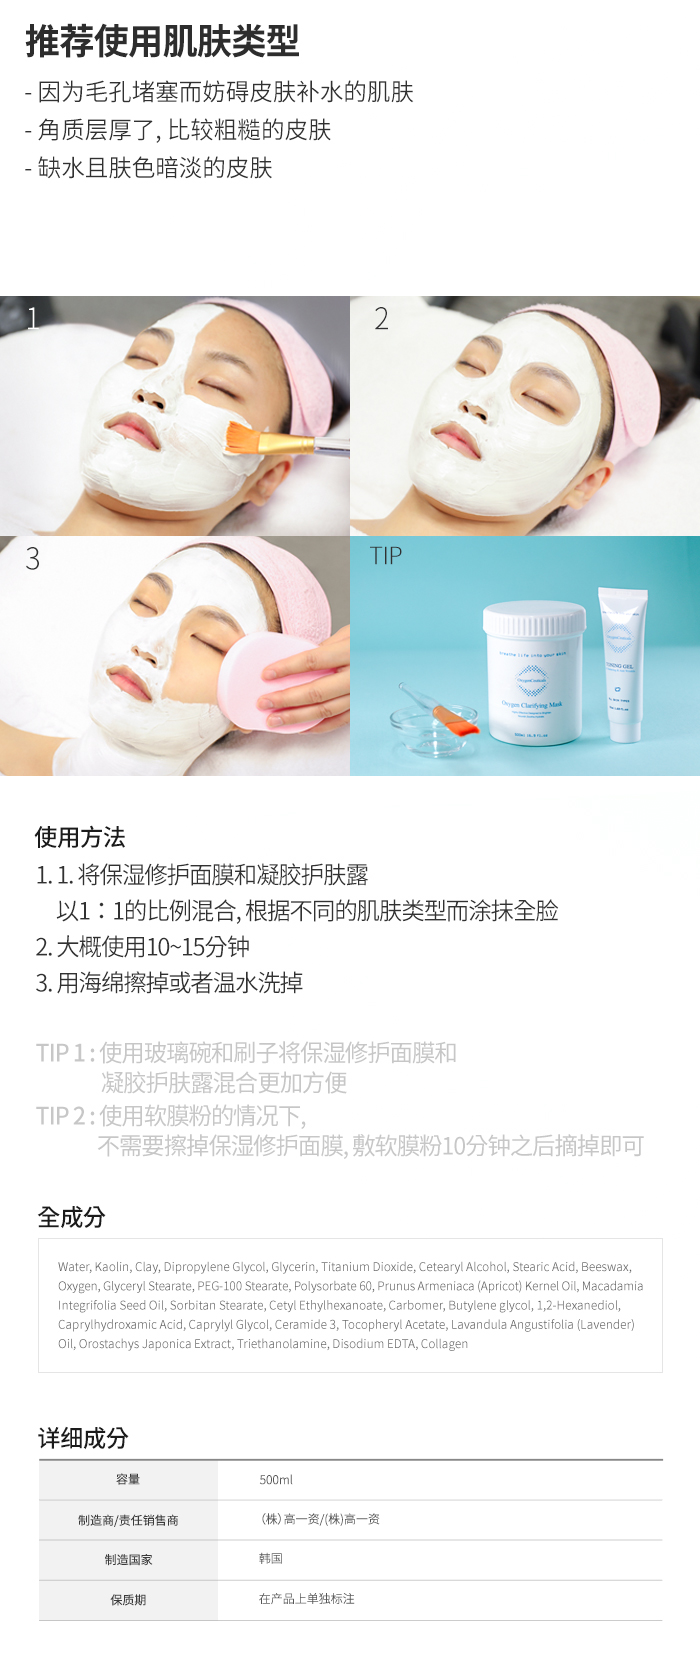 clarifying mask 保濕修護面膜: -5